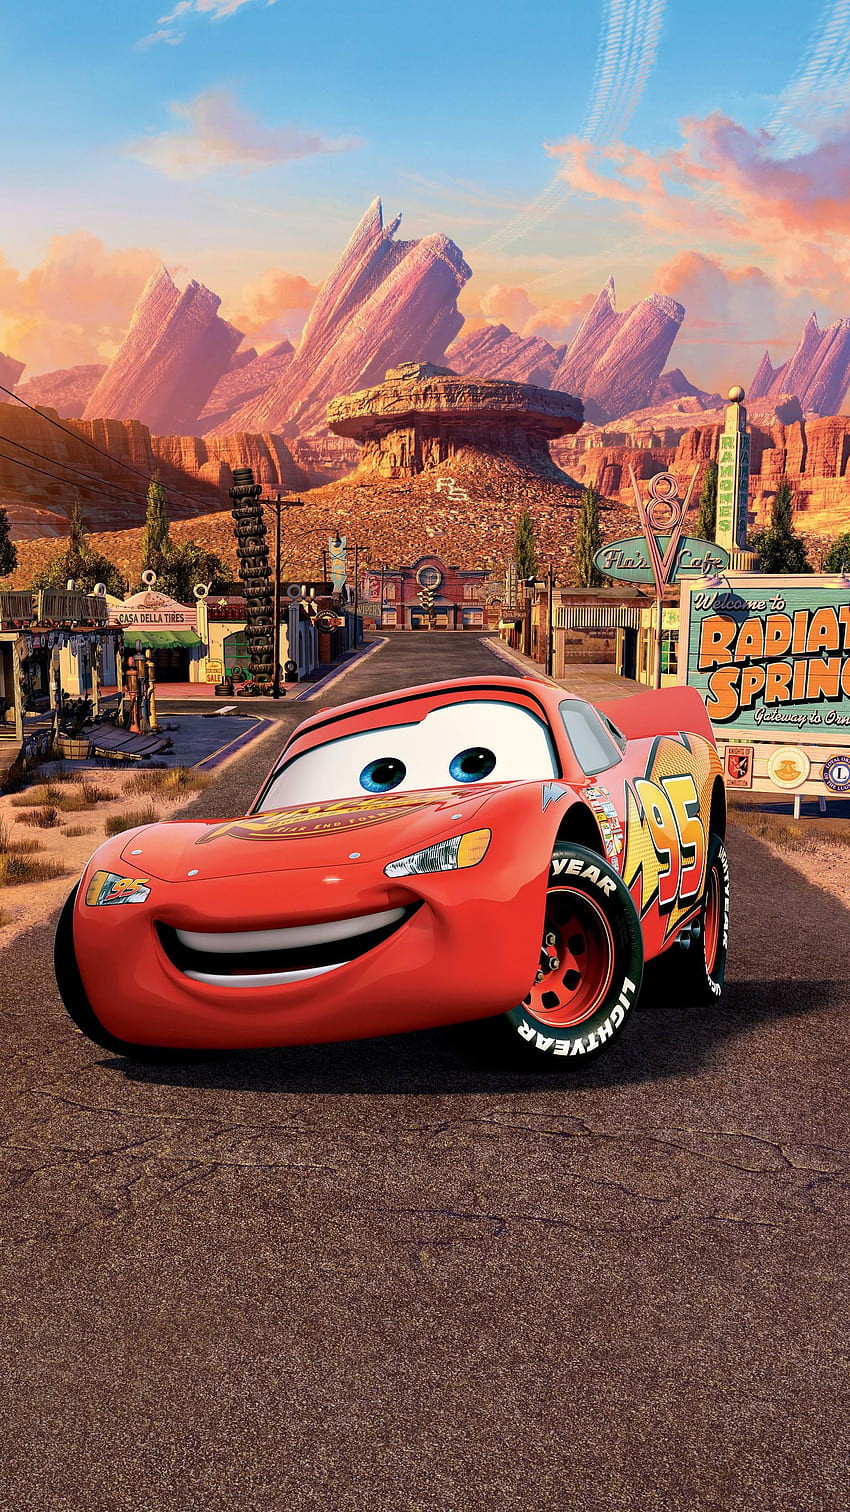 Coches (2006) Teléfono. Cinemanía. Disney cars , Cars cartoon disney, Cars movie fondo de pantalla del teléfono